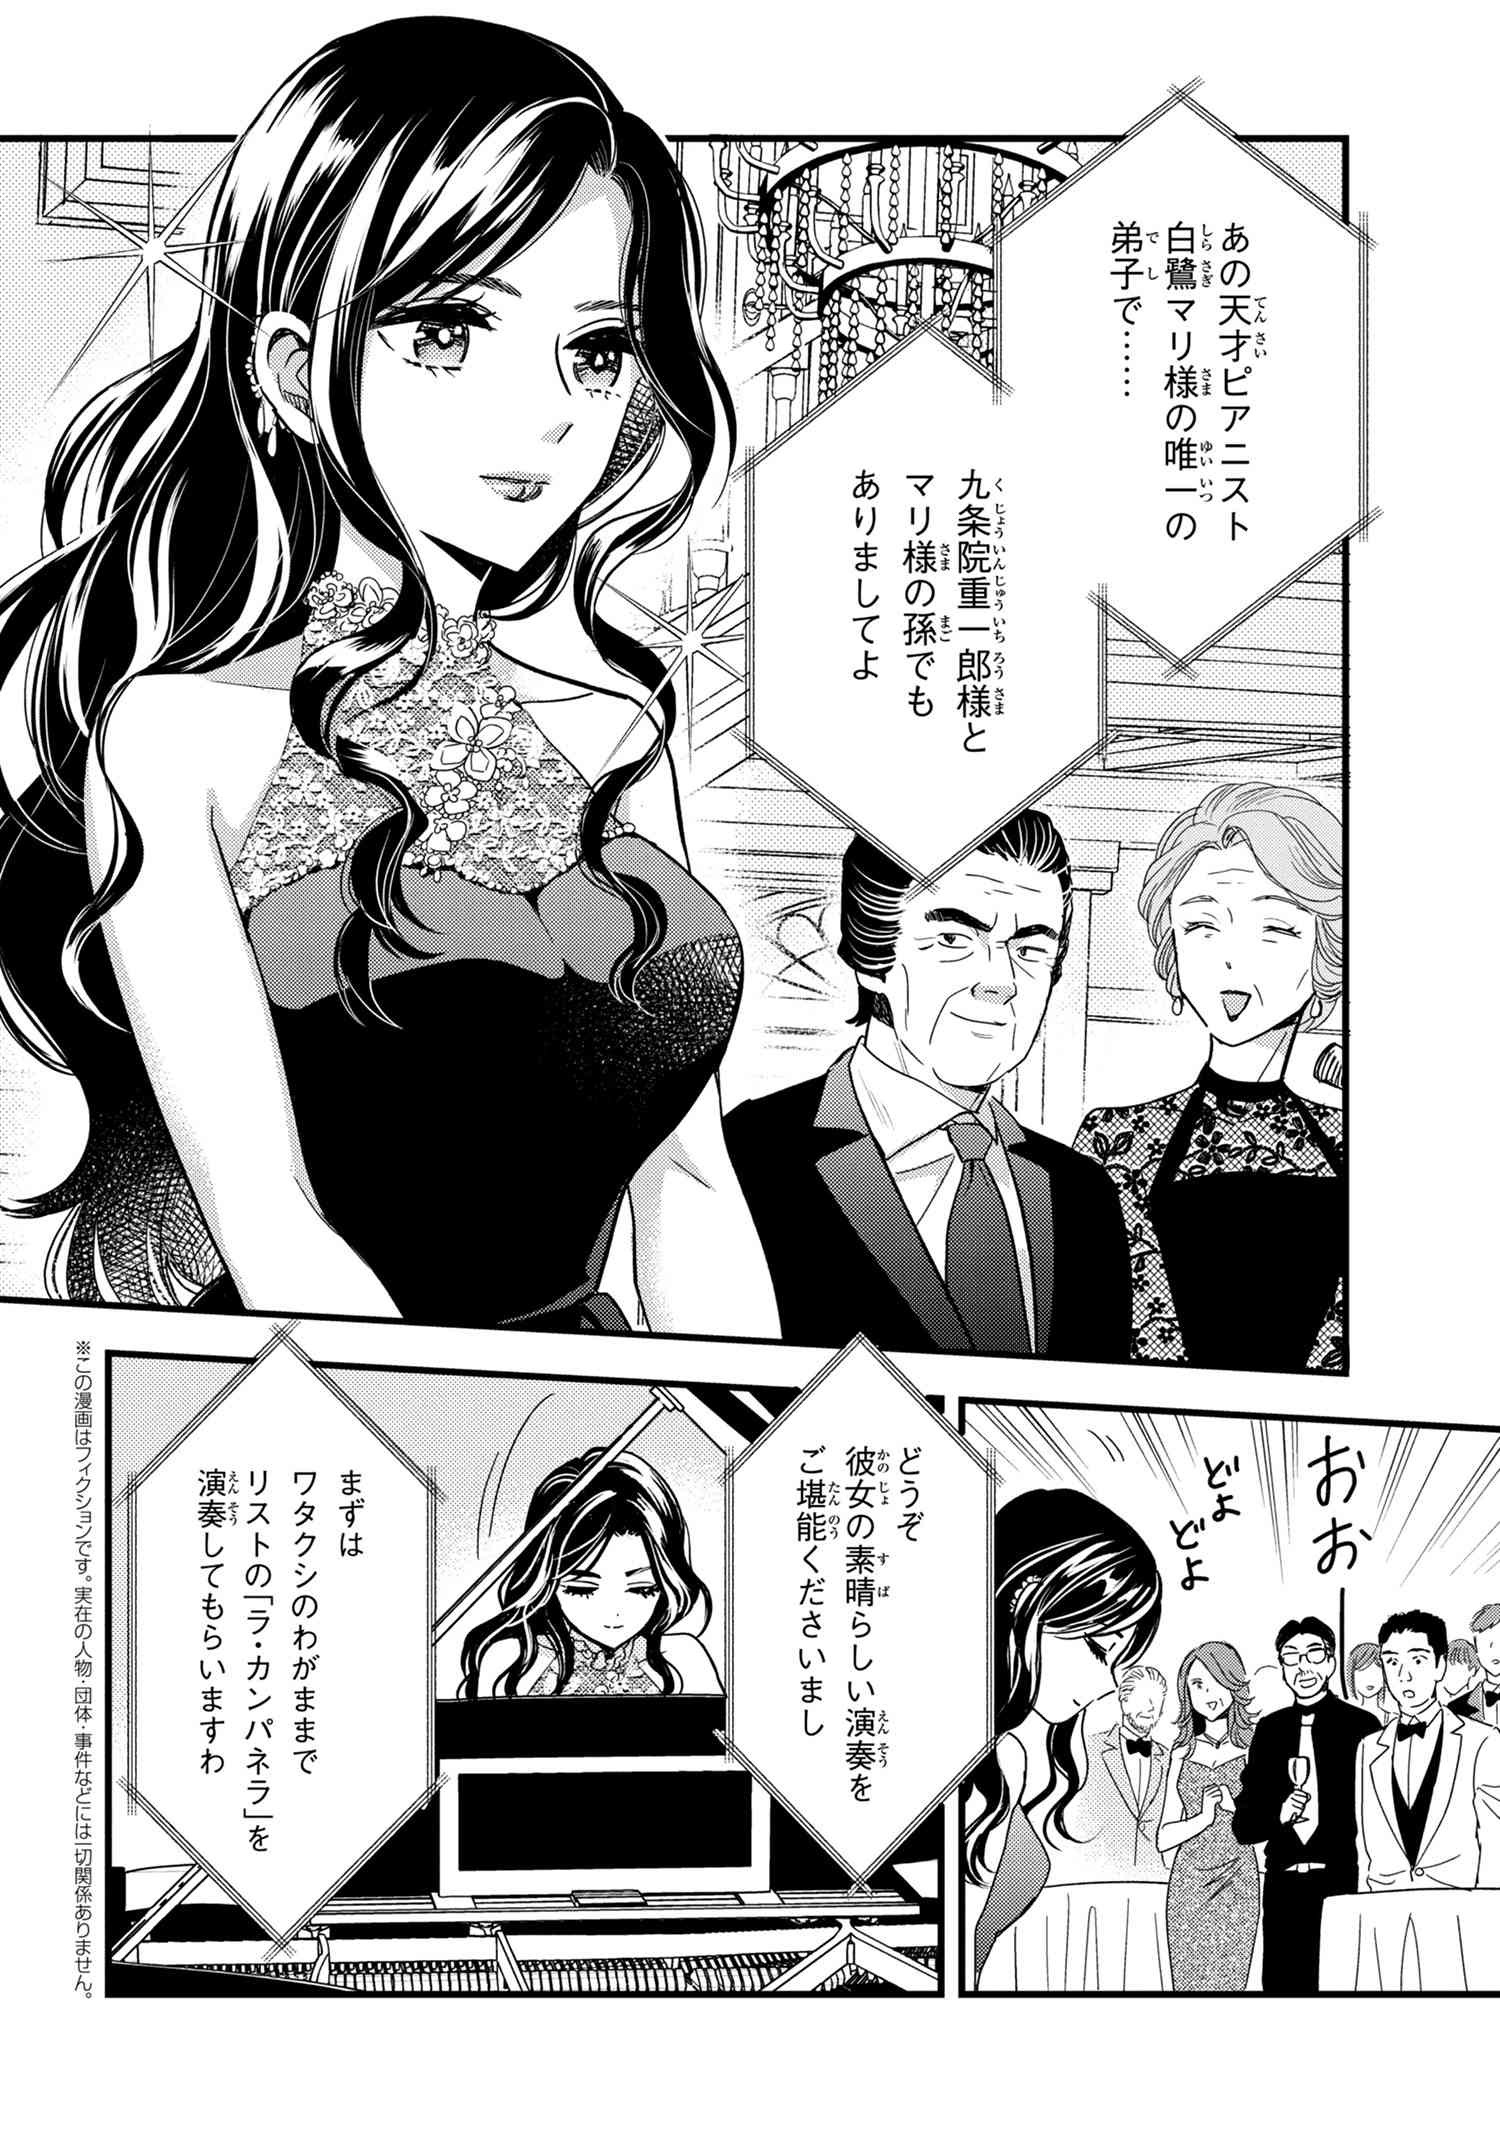 Reiko no Fuugi Akuyaku Reijou to Yobarete imasu ga, tada no Binbou Musume desu - Chapter 14-1 - Page 2